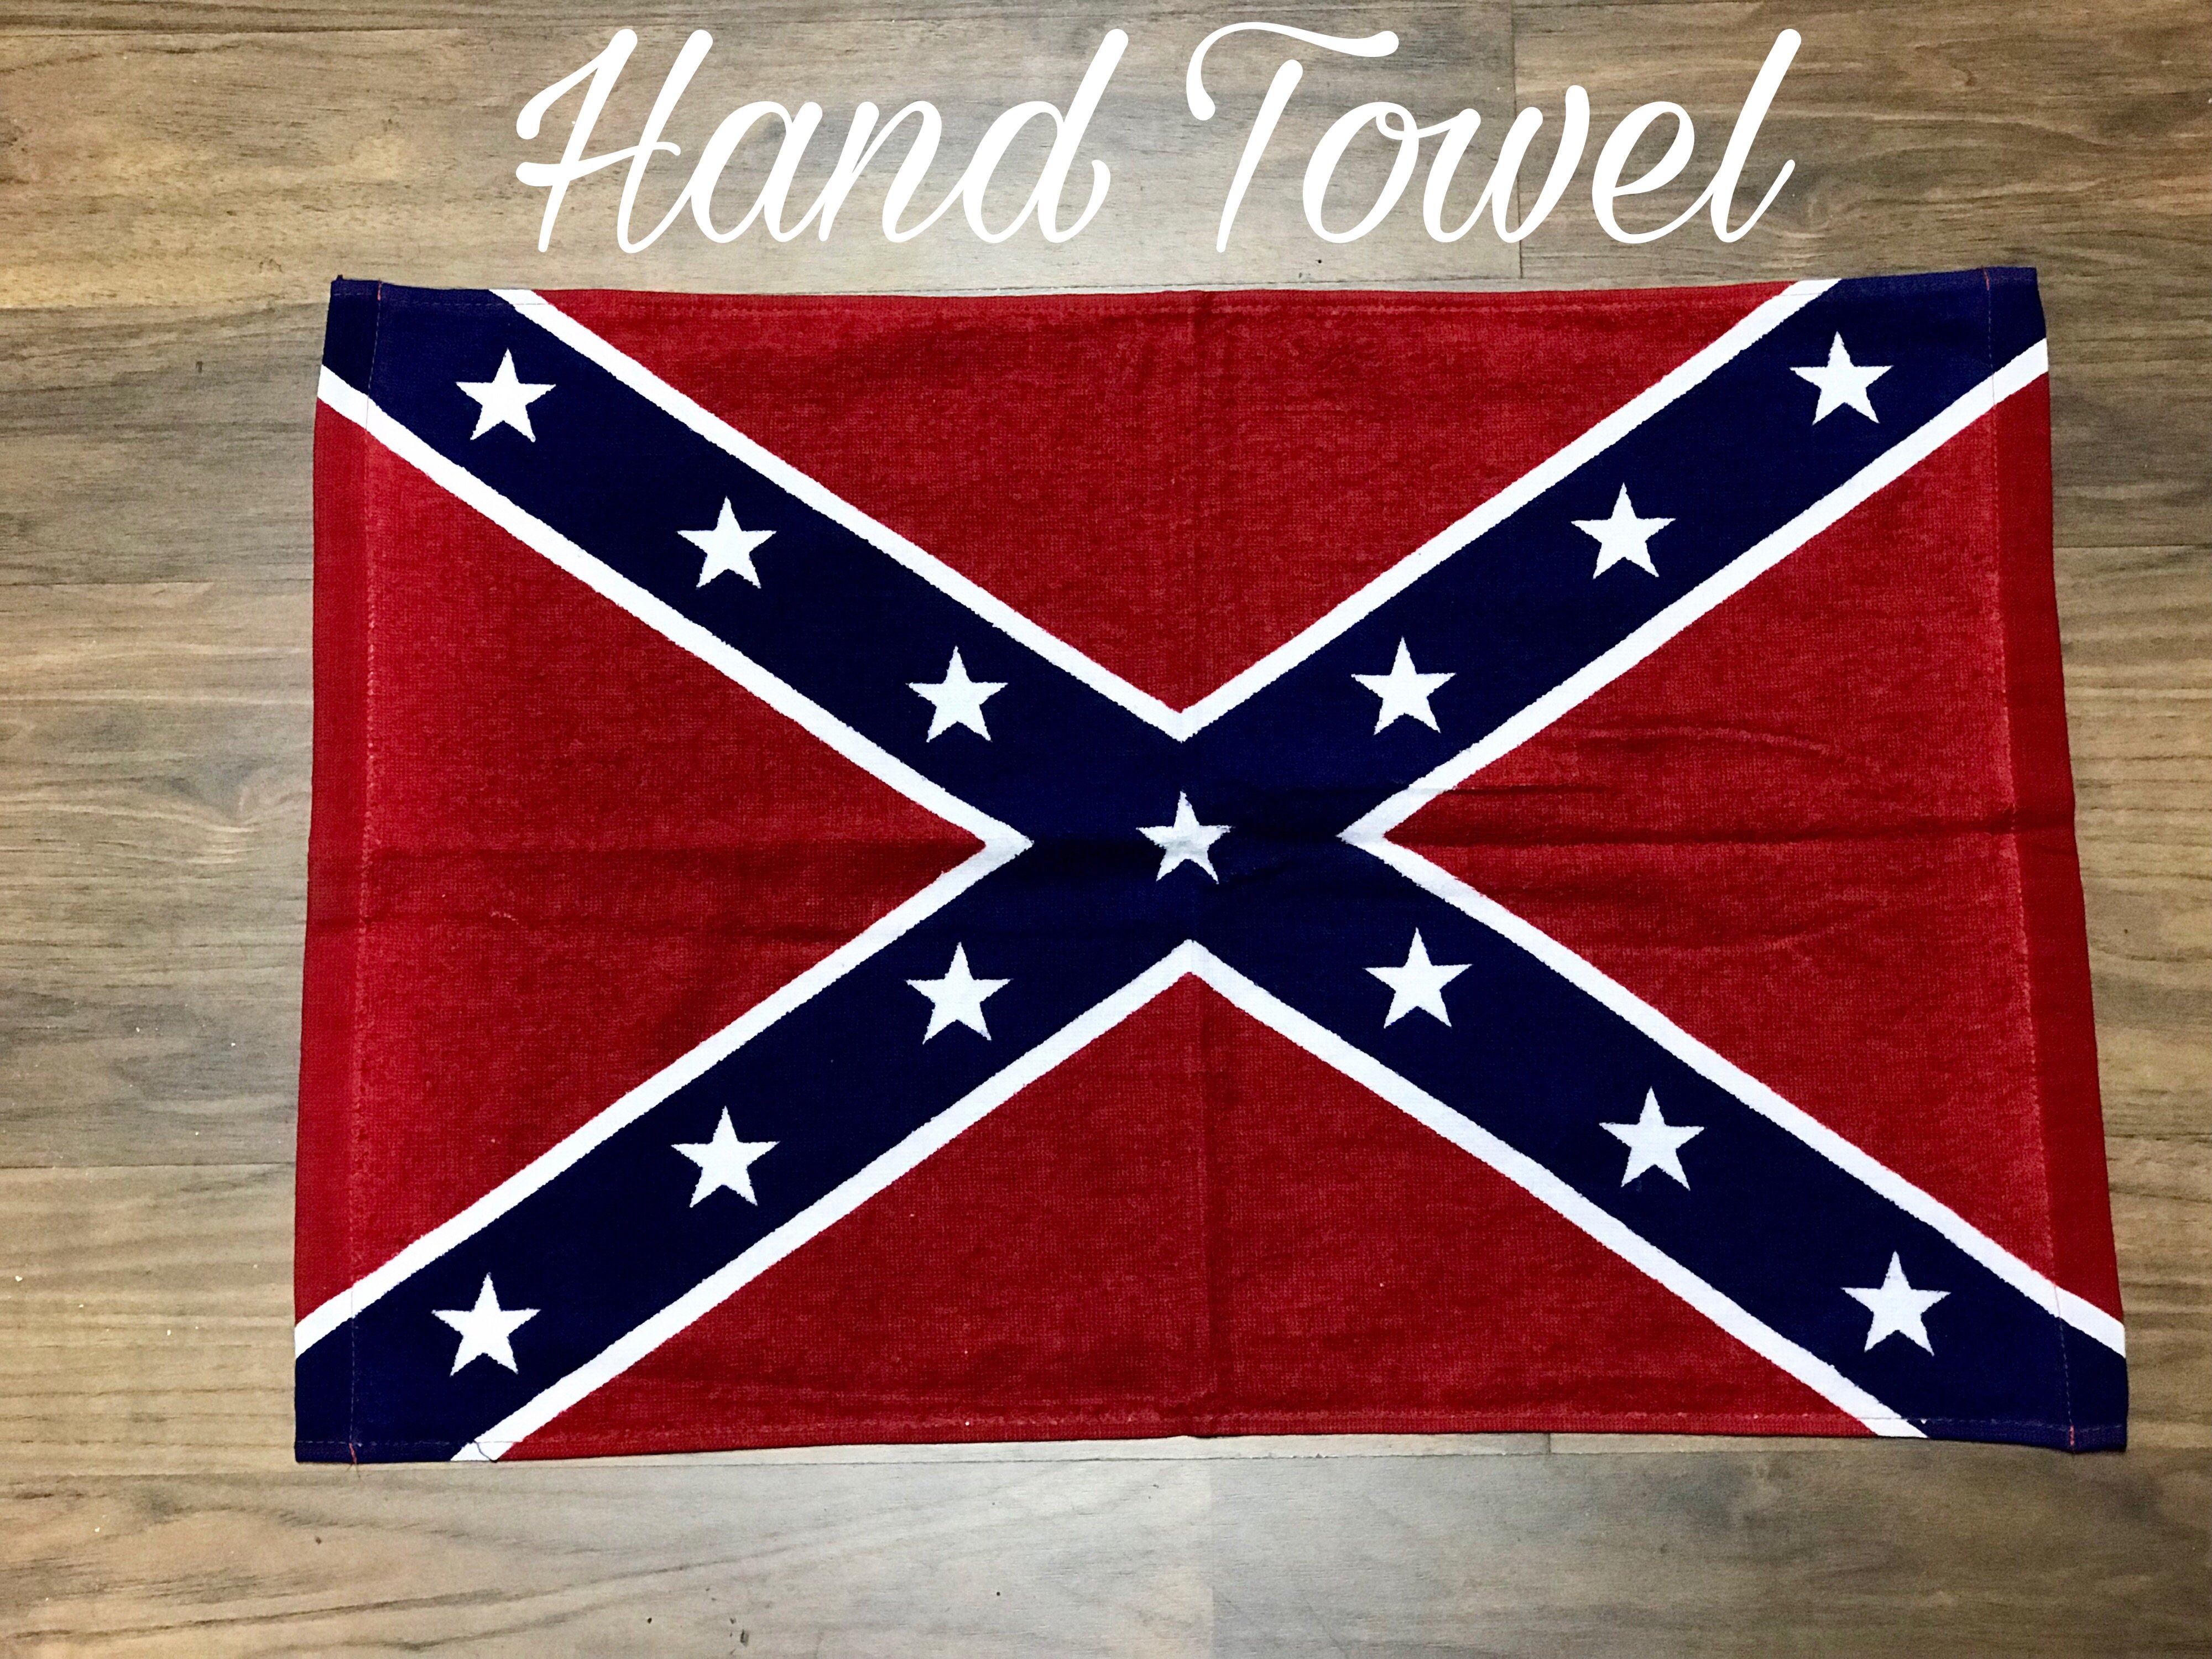 Rebel Towel Set